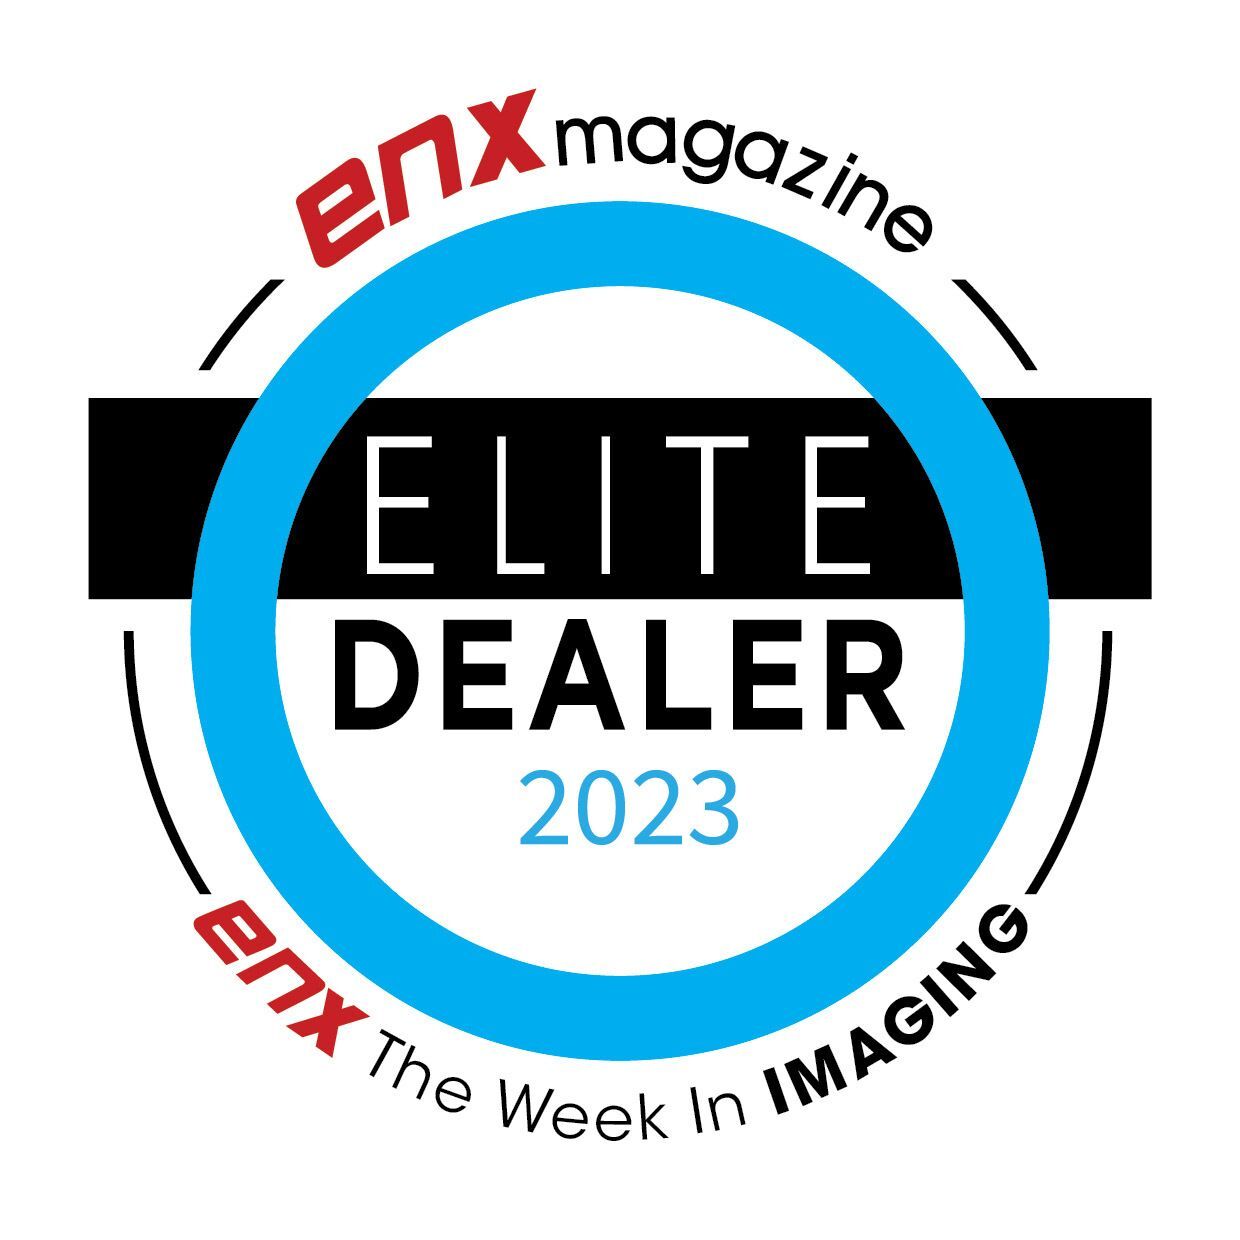 ENX Magazine Elite Dealer 2023 Badge